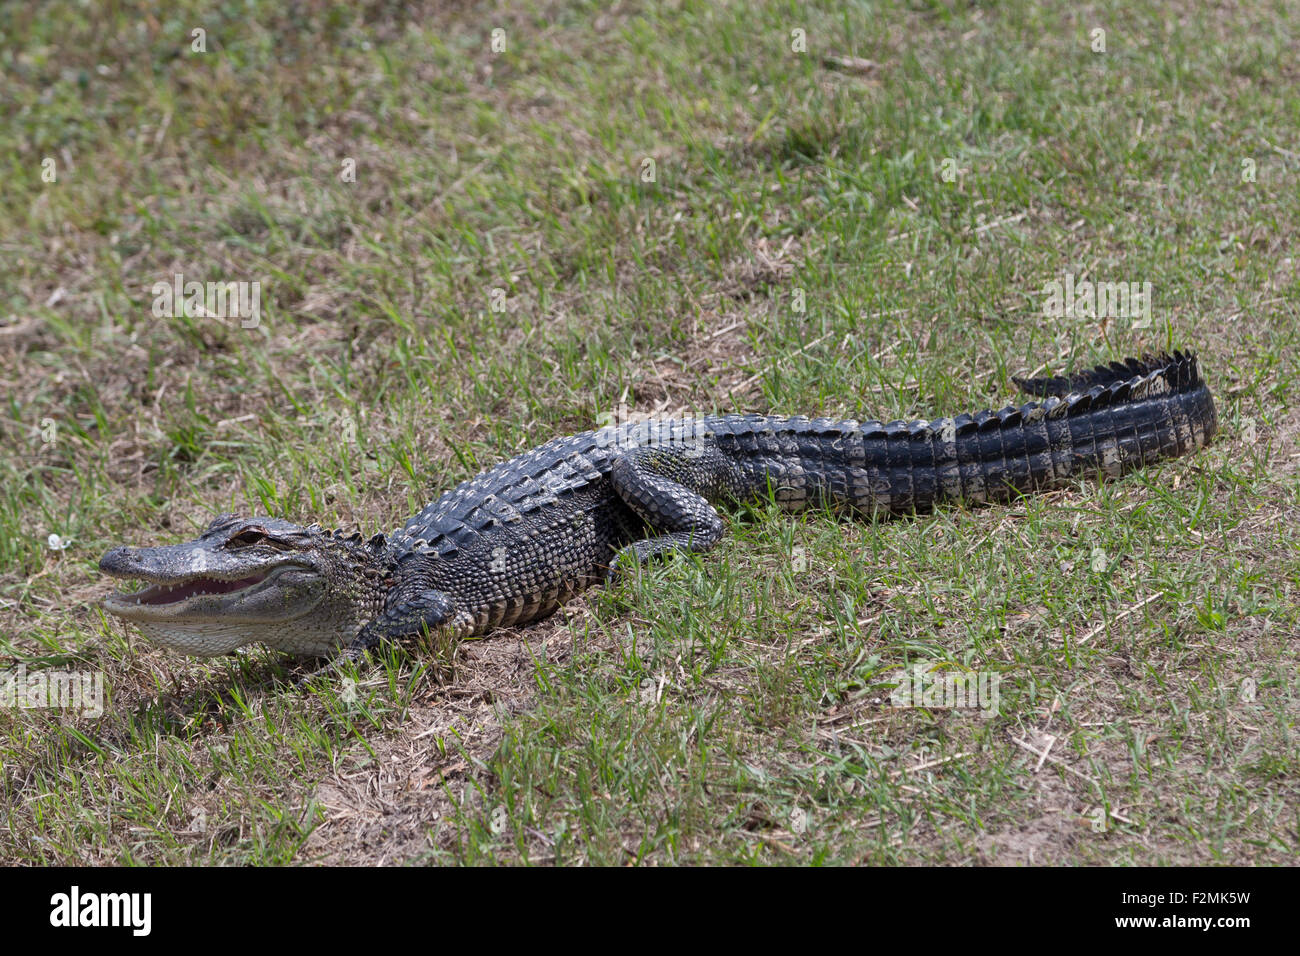 Ein Foto von einem amerikanischen Alligator in freier Wildbahn in der Nähe von Savannah in Georgia. Der Alligator ist selbst auf einige Rasen Sonnen. Stockfoto